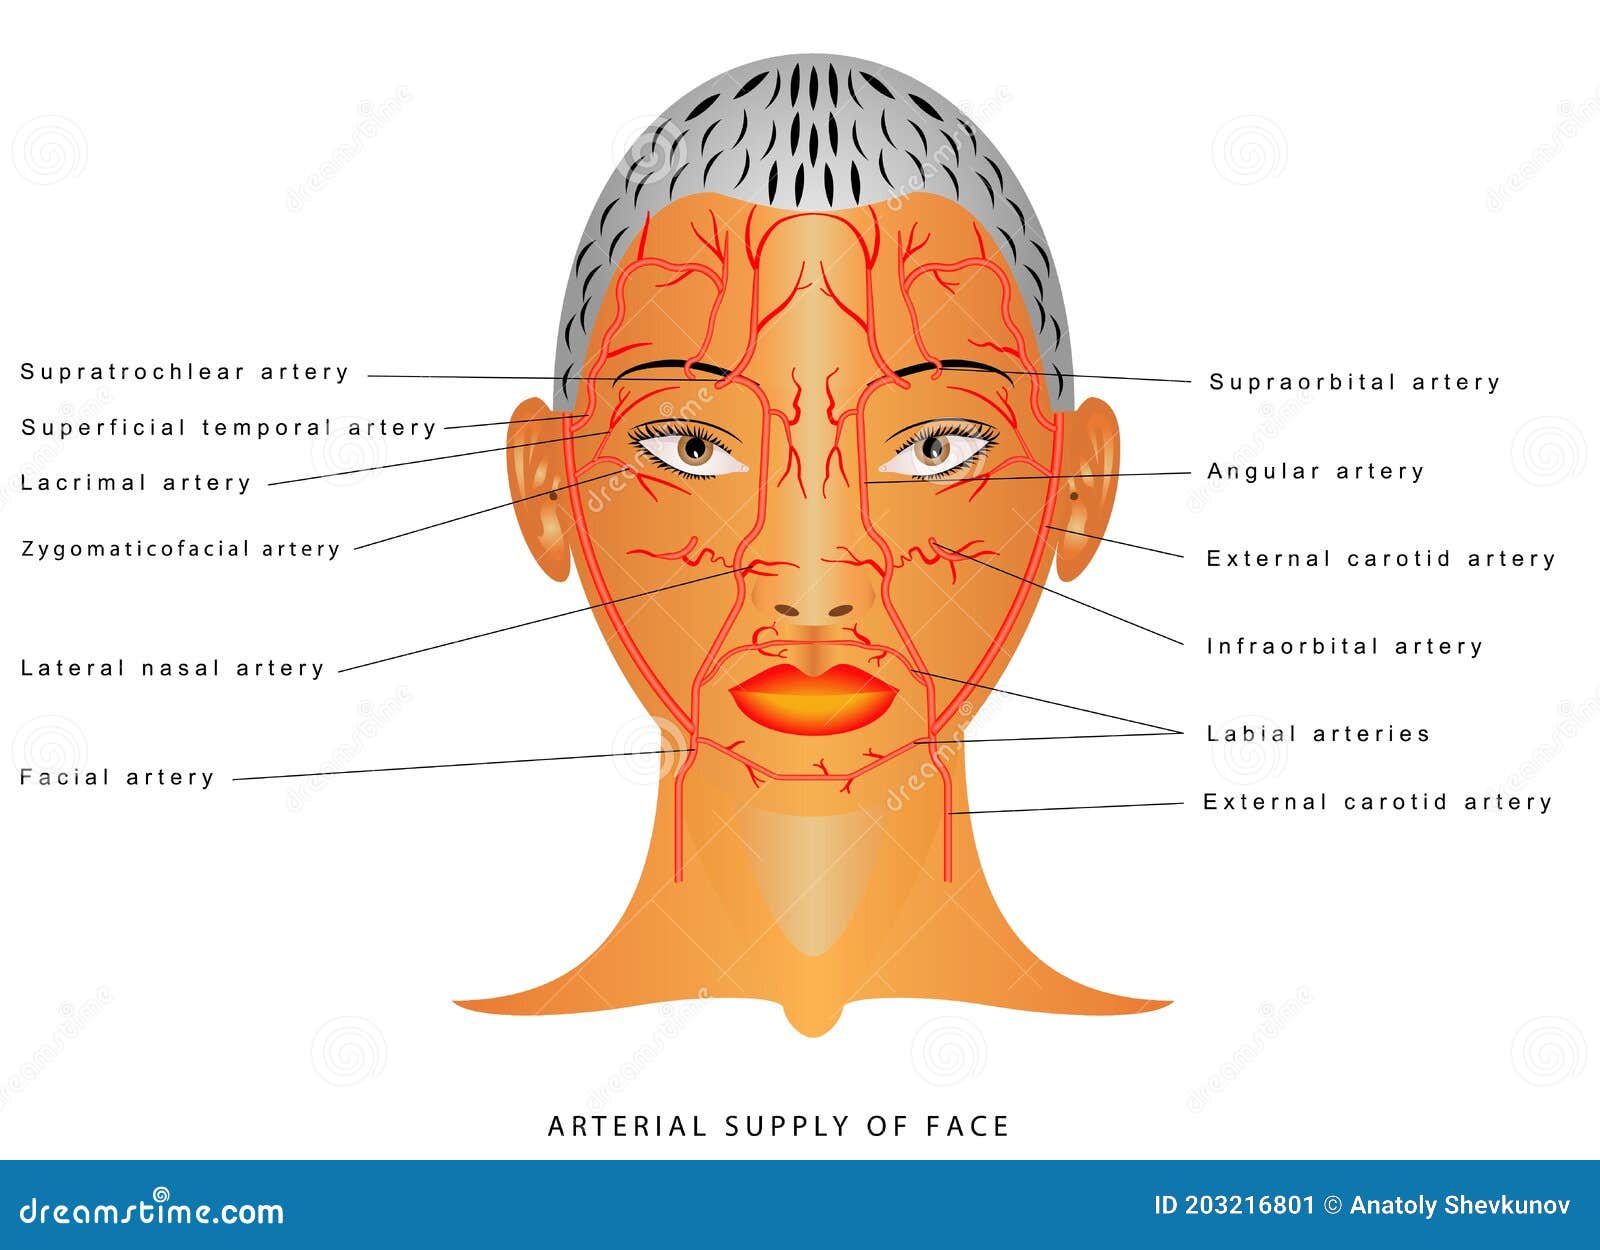 facial arteries